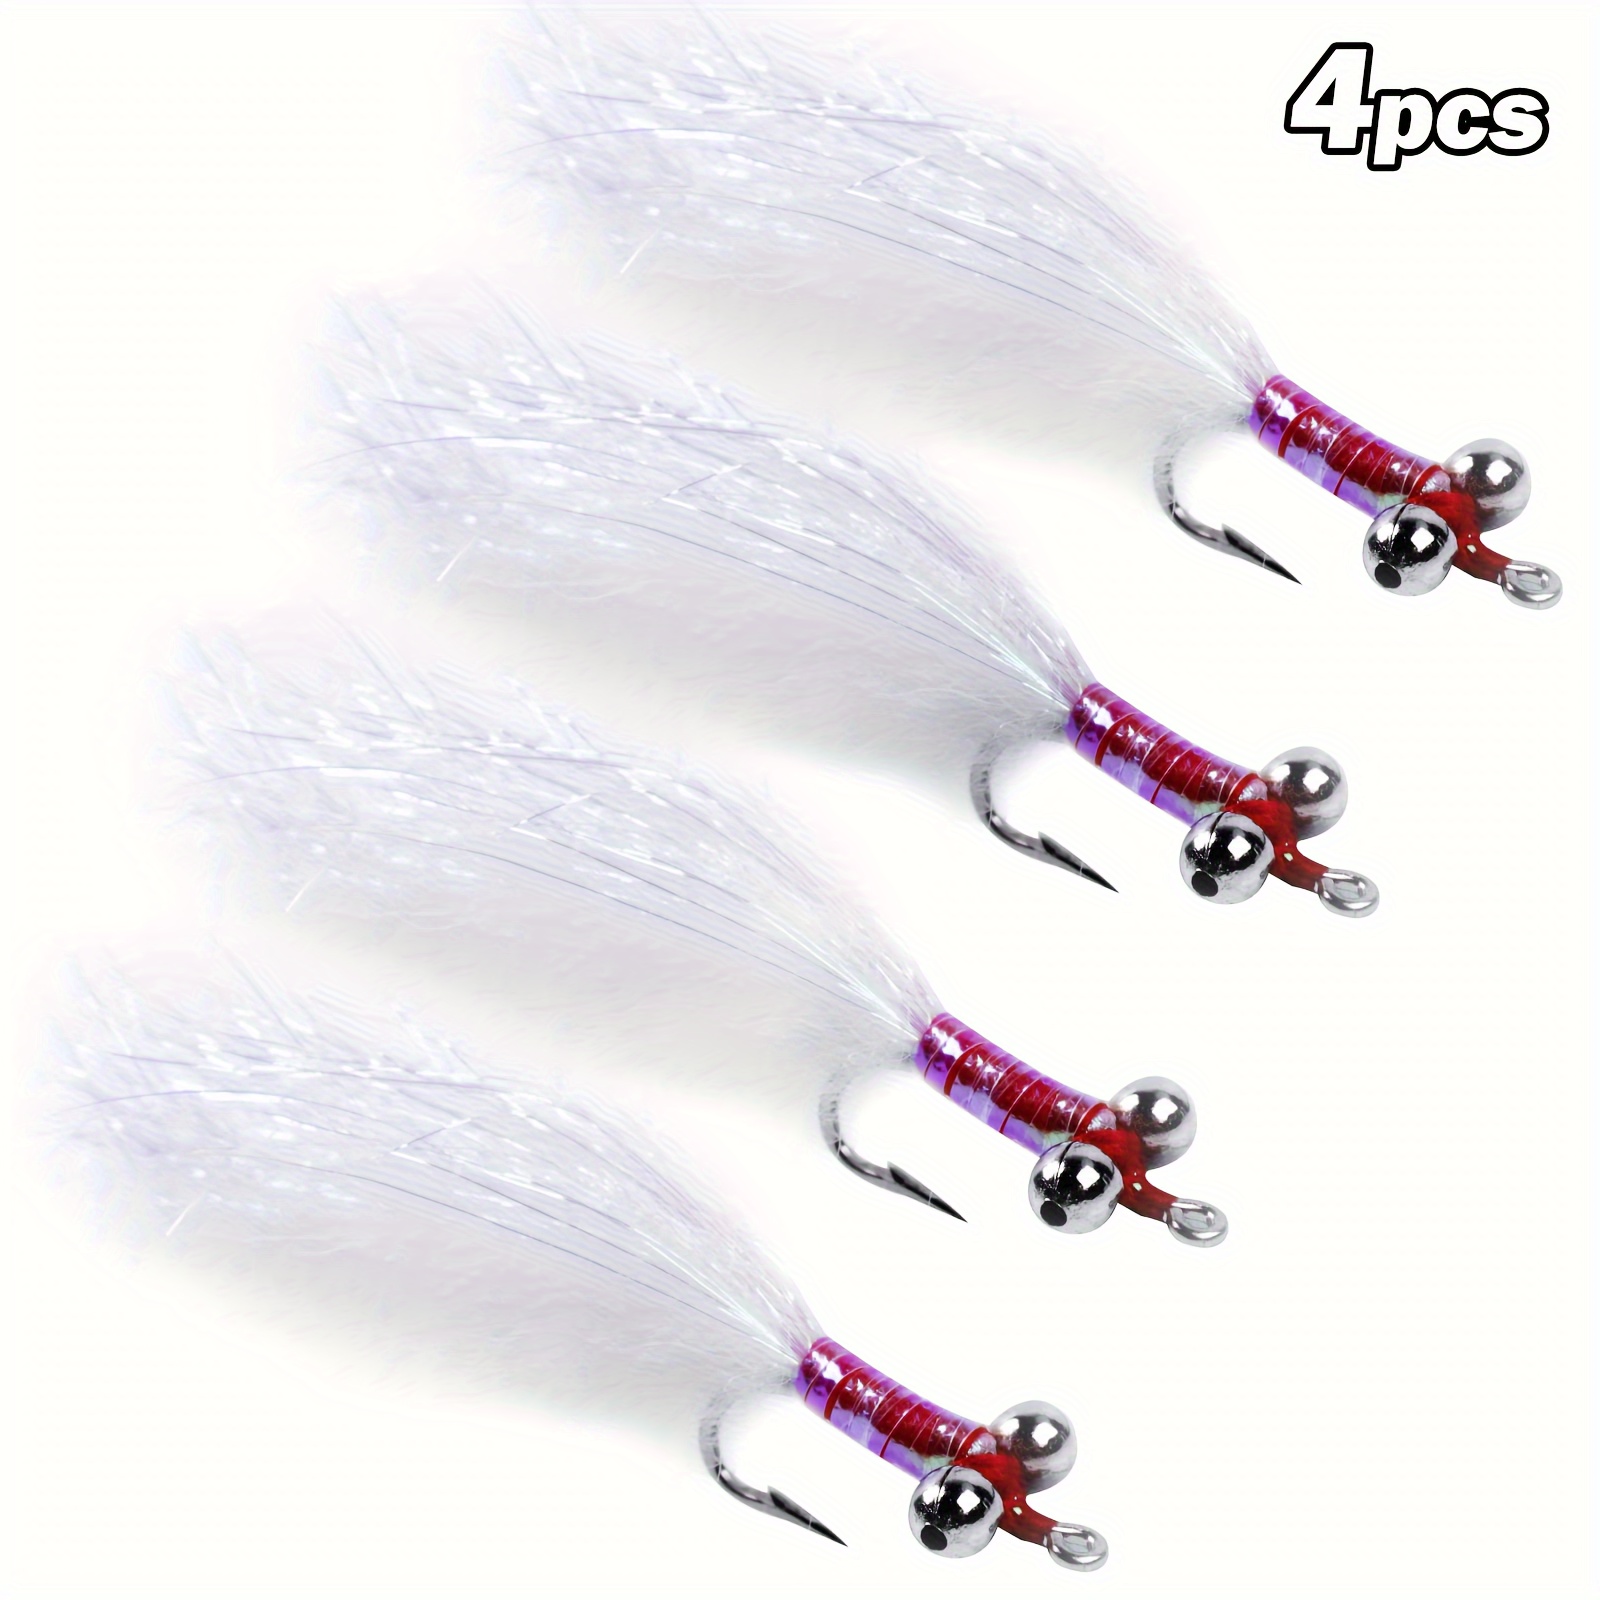 1Pcs/3Pcs Trout Steelhead Salmon Pike Streamer Fly for Fly Fishing Flies  Fishhook Size 1/0